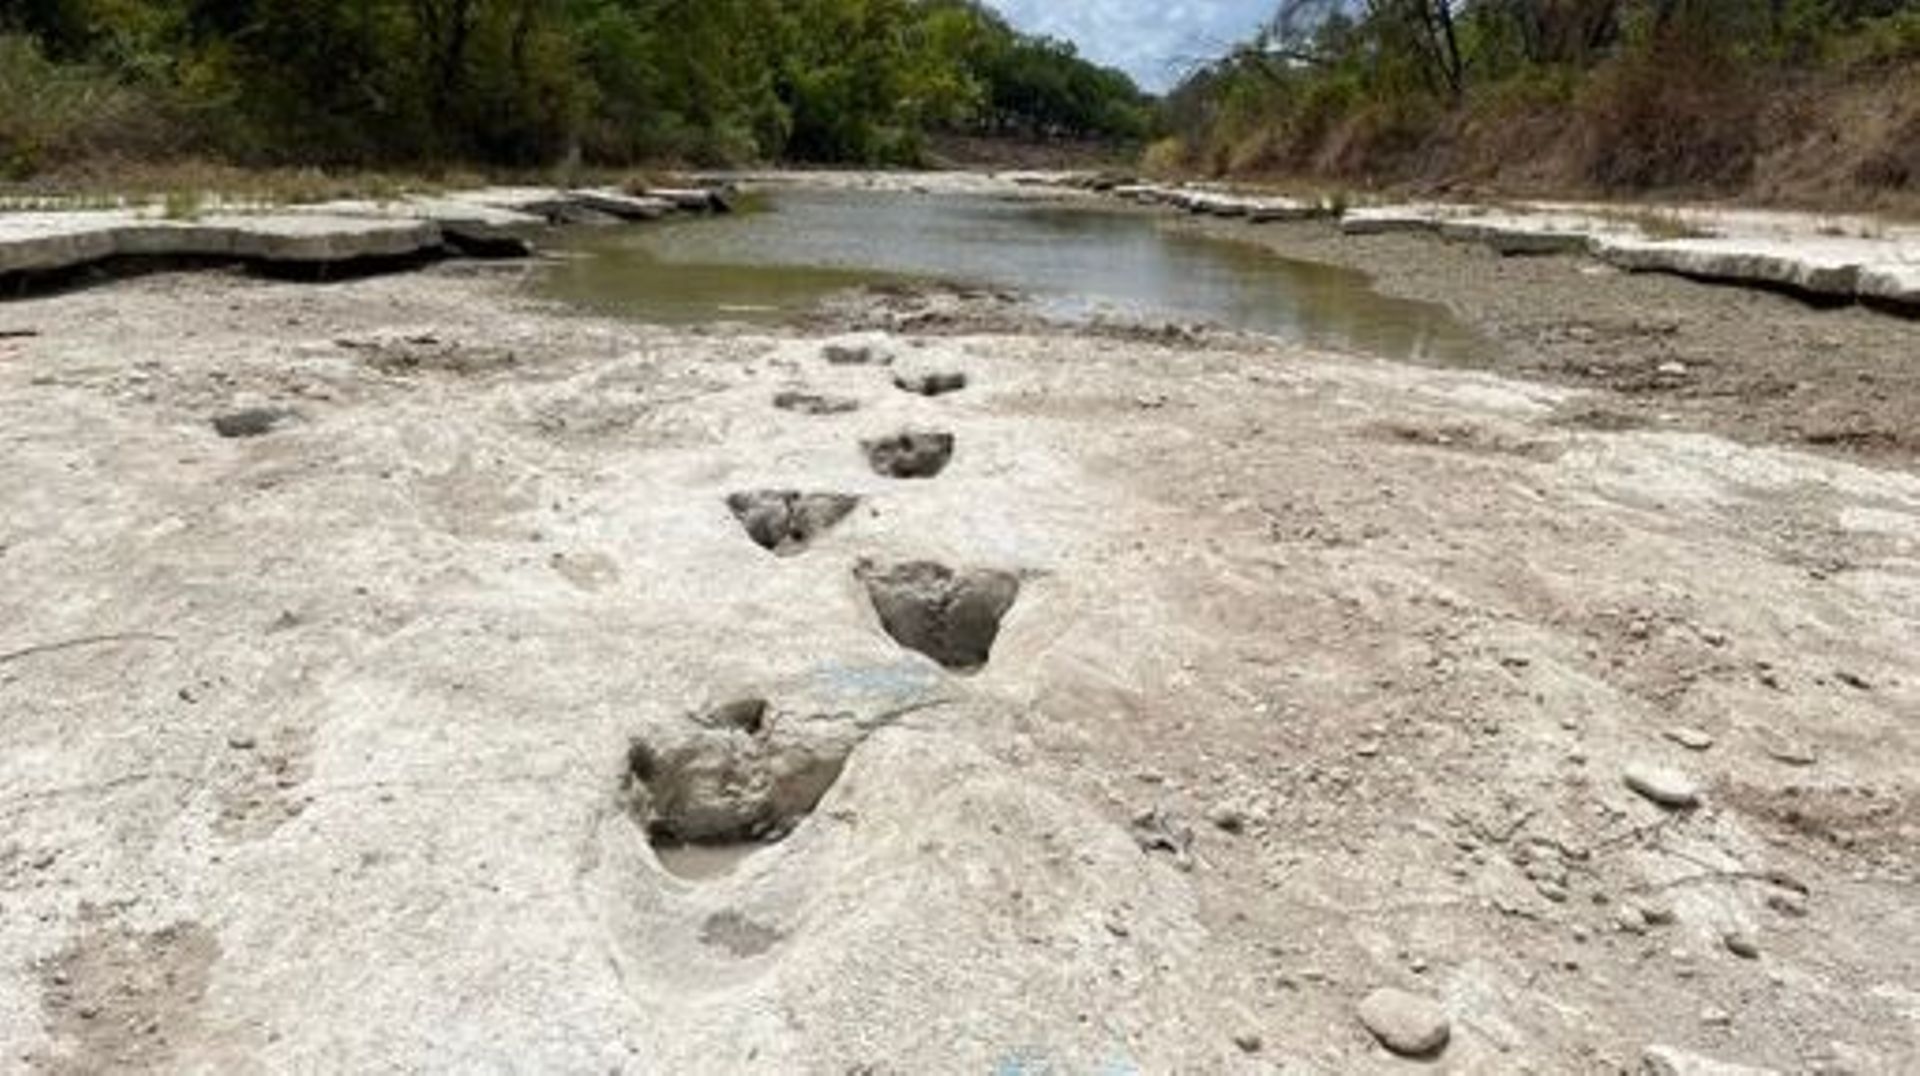 Sécheresse - La sécheresse laisse apparaître des traces de dinosaures dans le lit d'une rivière texane